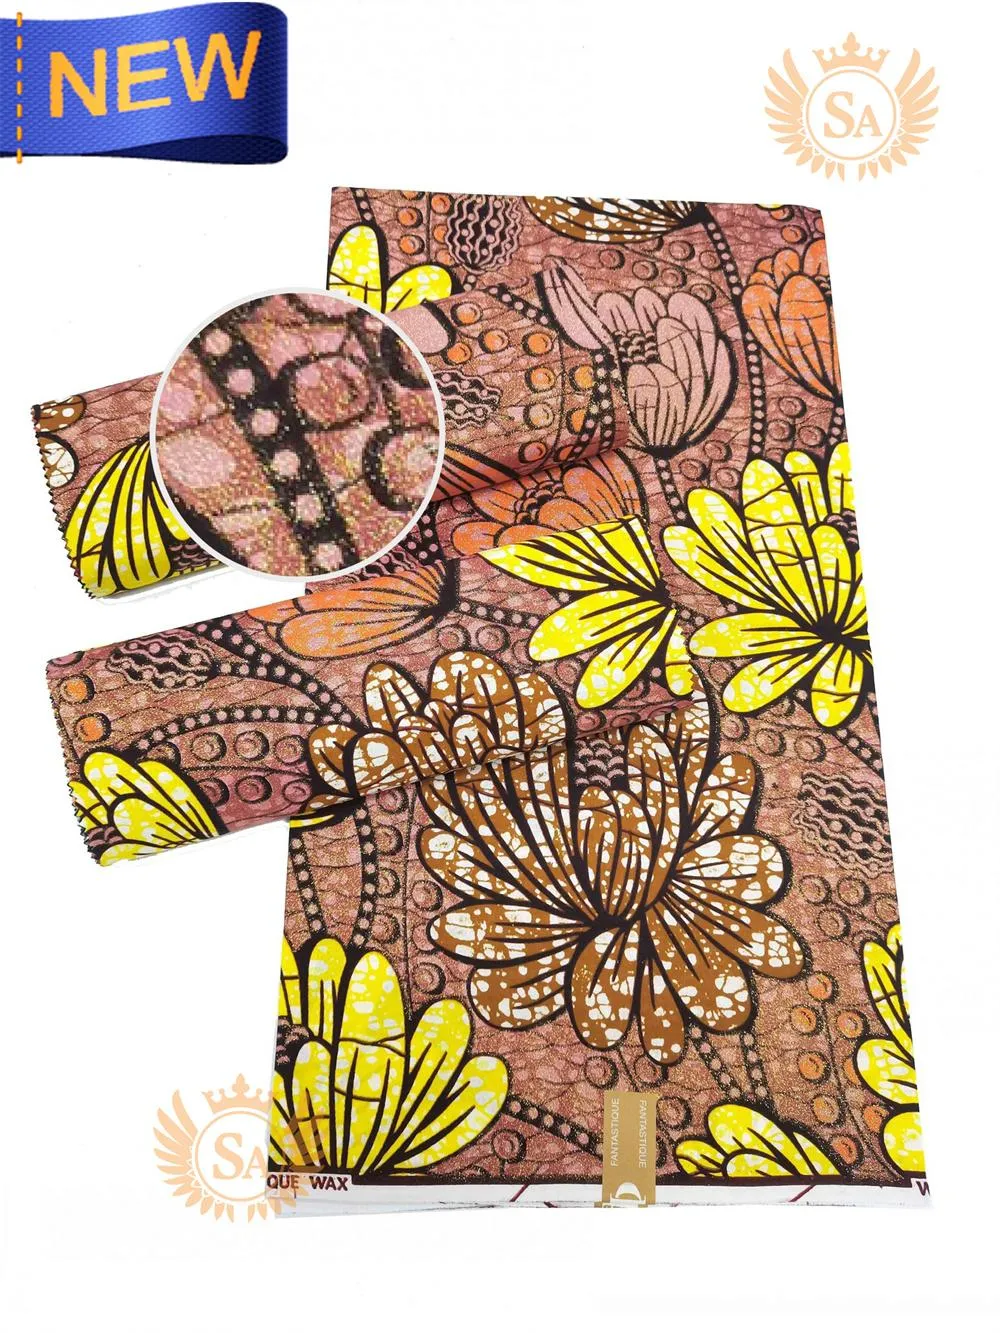 Tessuto New Grand African Wax Glitter Glam Tessuto di cotone Ankara Batik Materiale hollandais Pagne super cera per cucire abito da festa di nozze